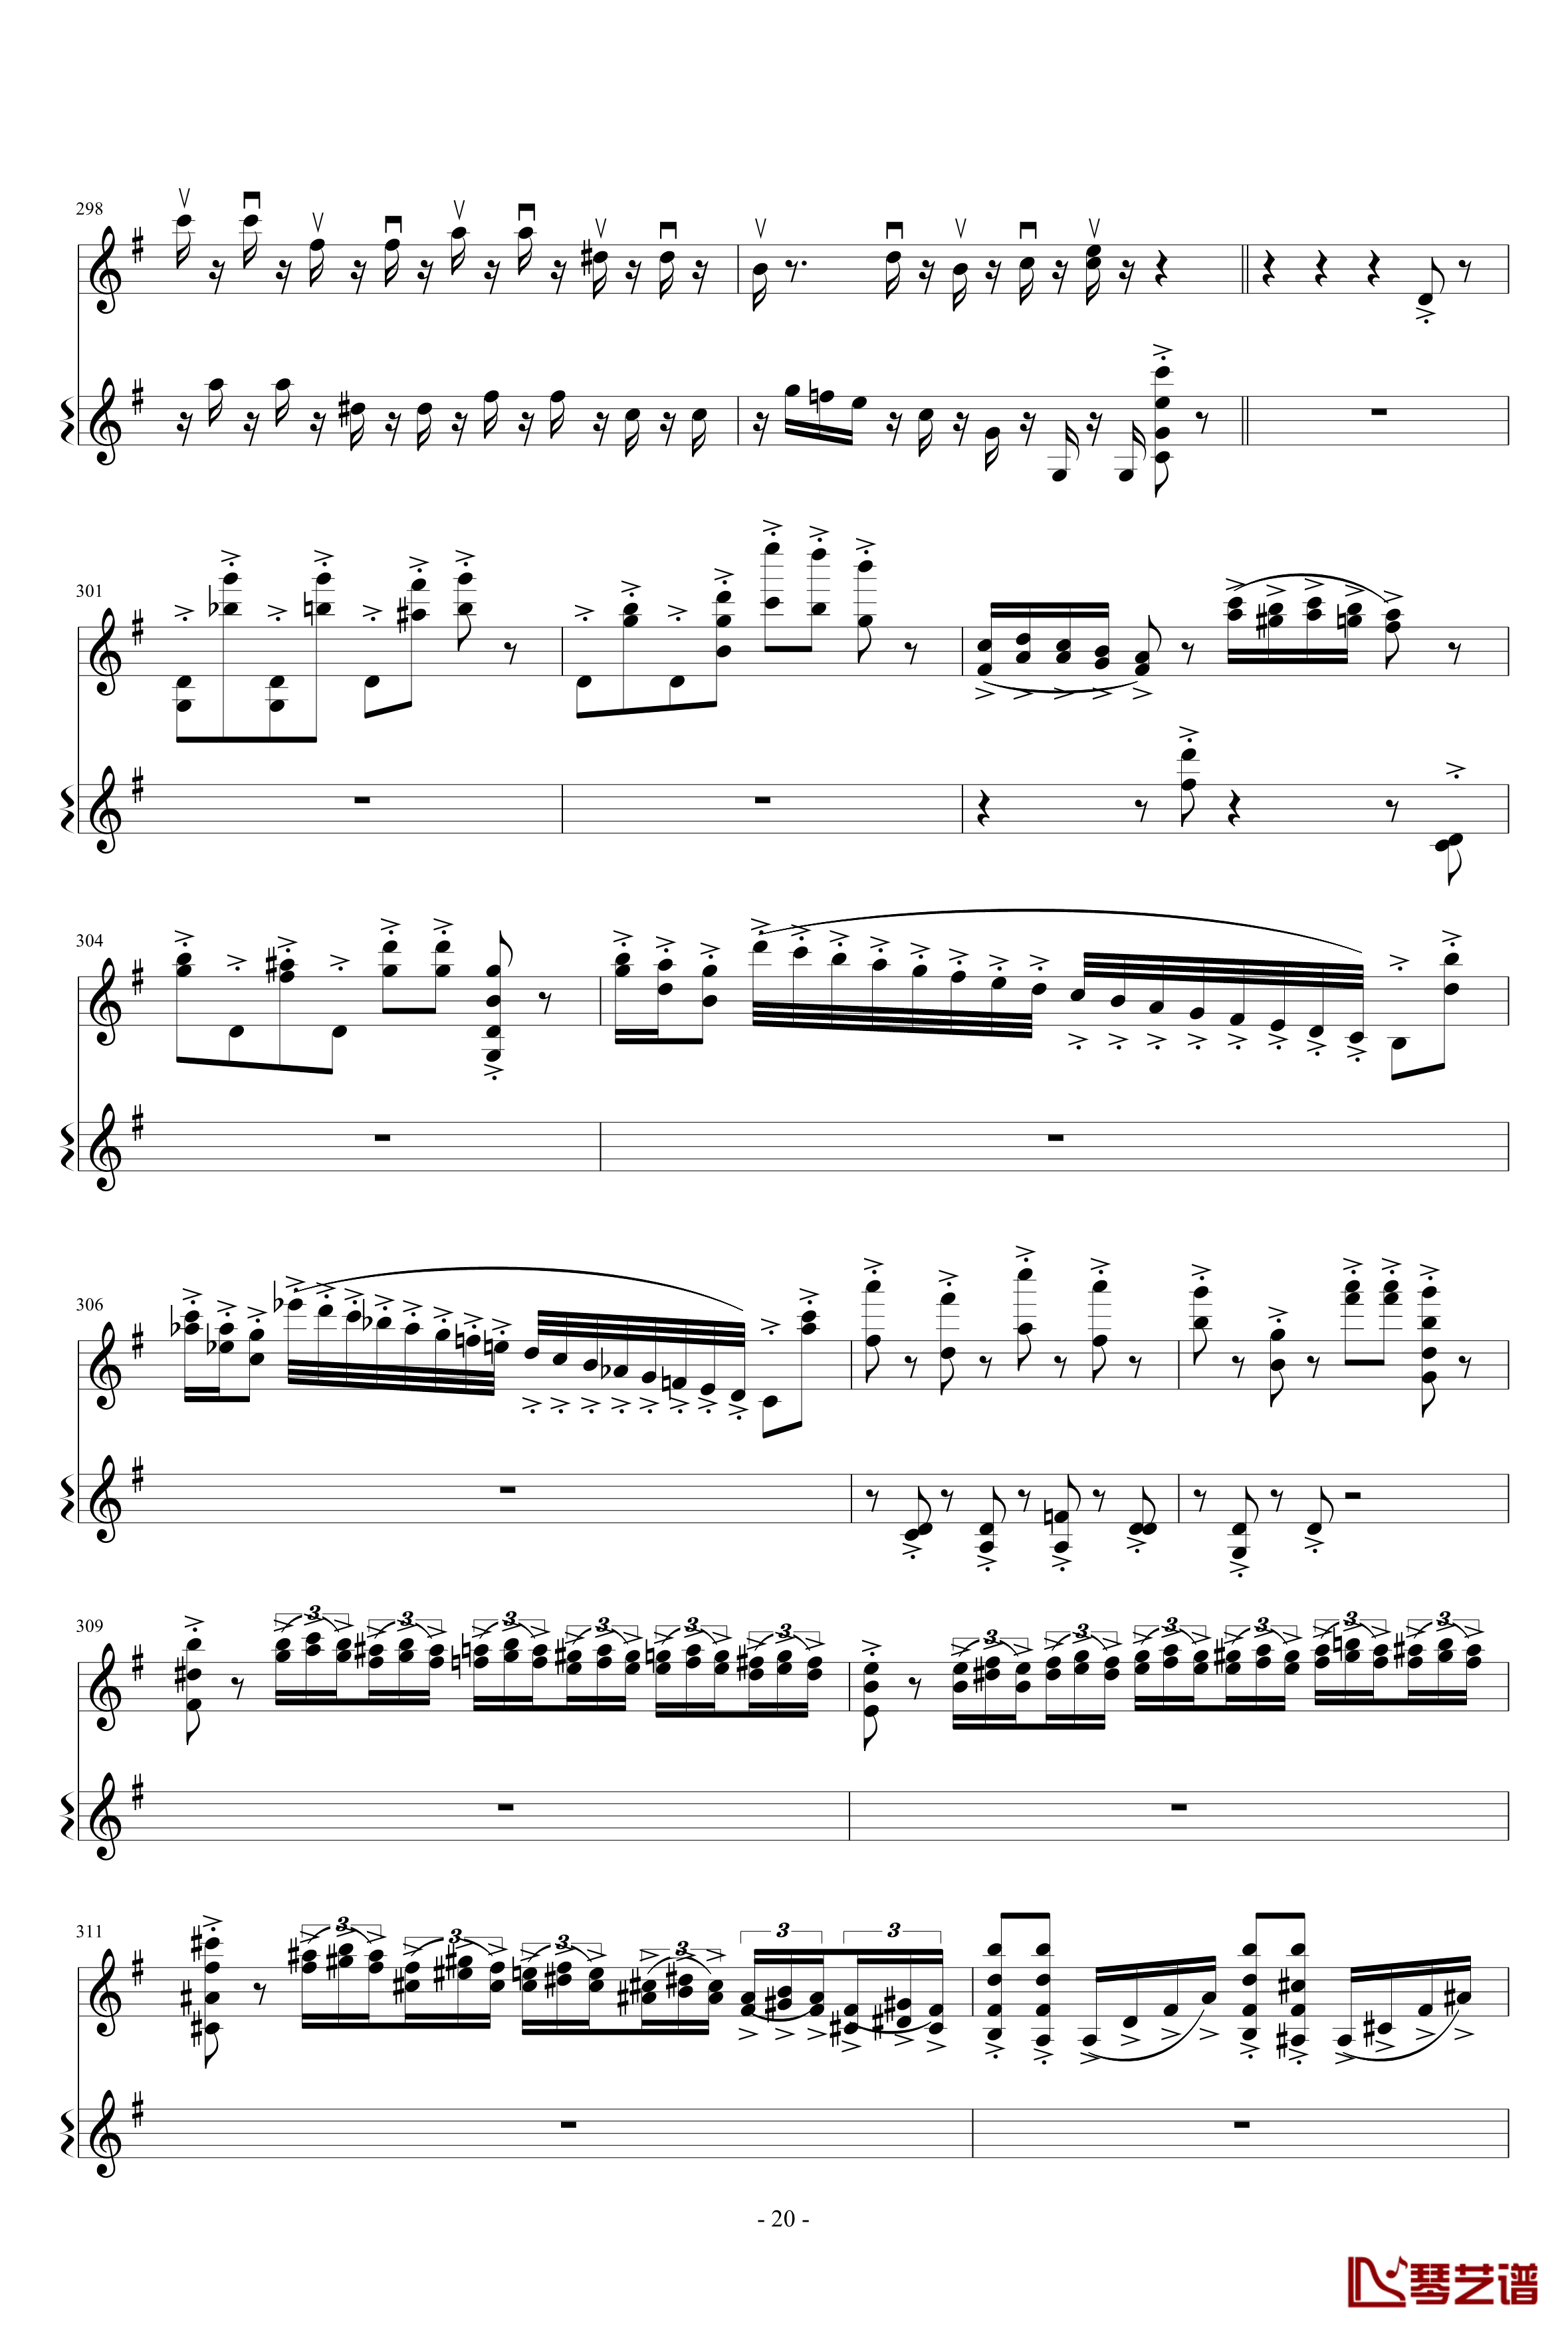 意大利国歌变奏曲钢琴谱-只修改了一个音-DXF20